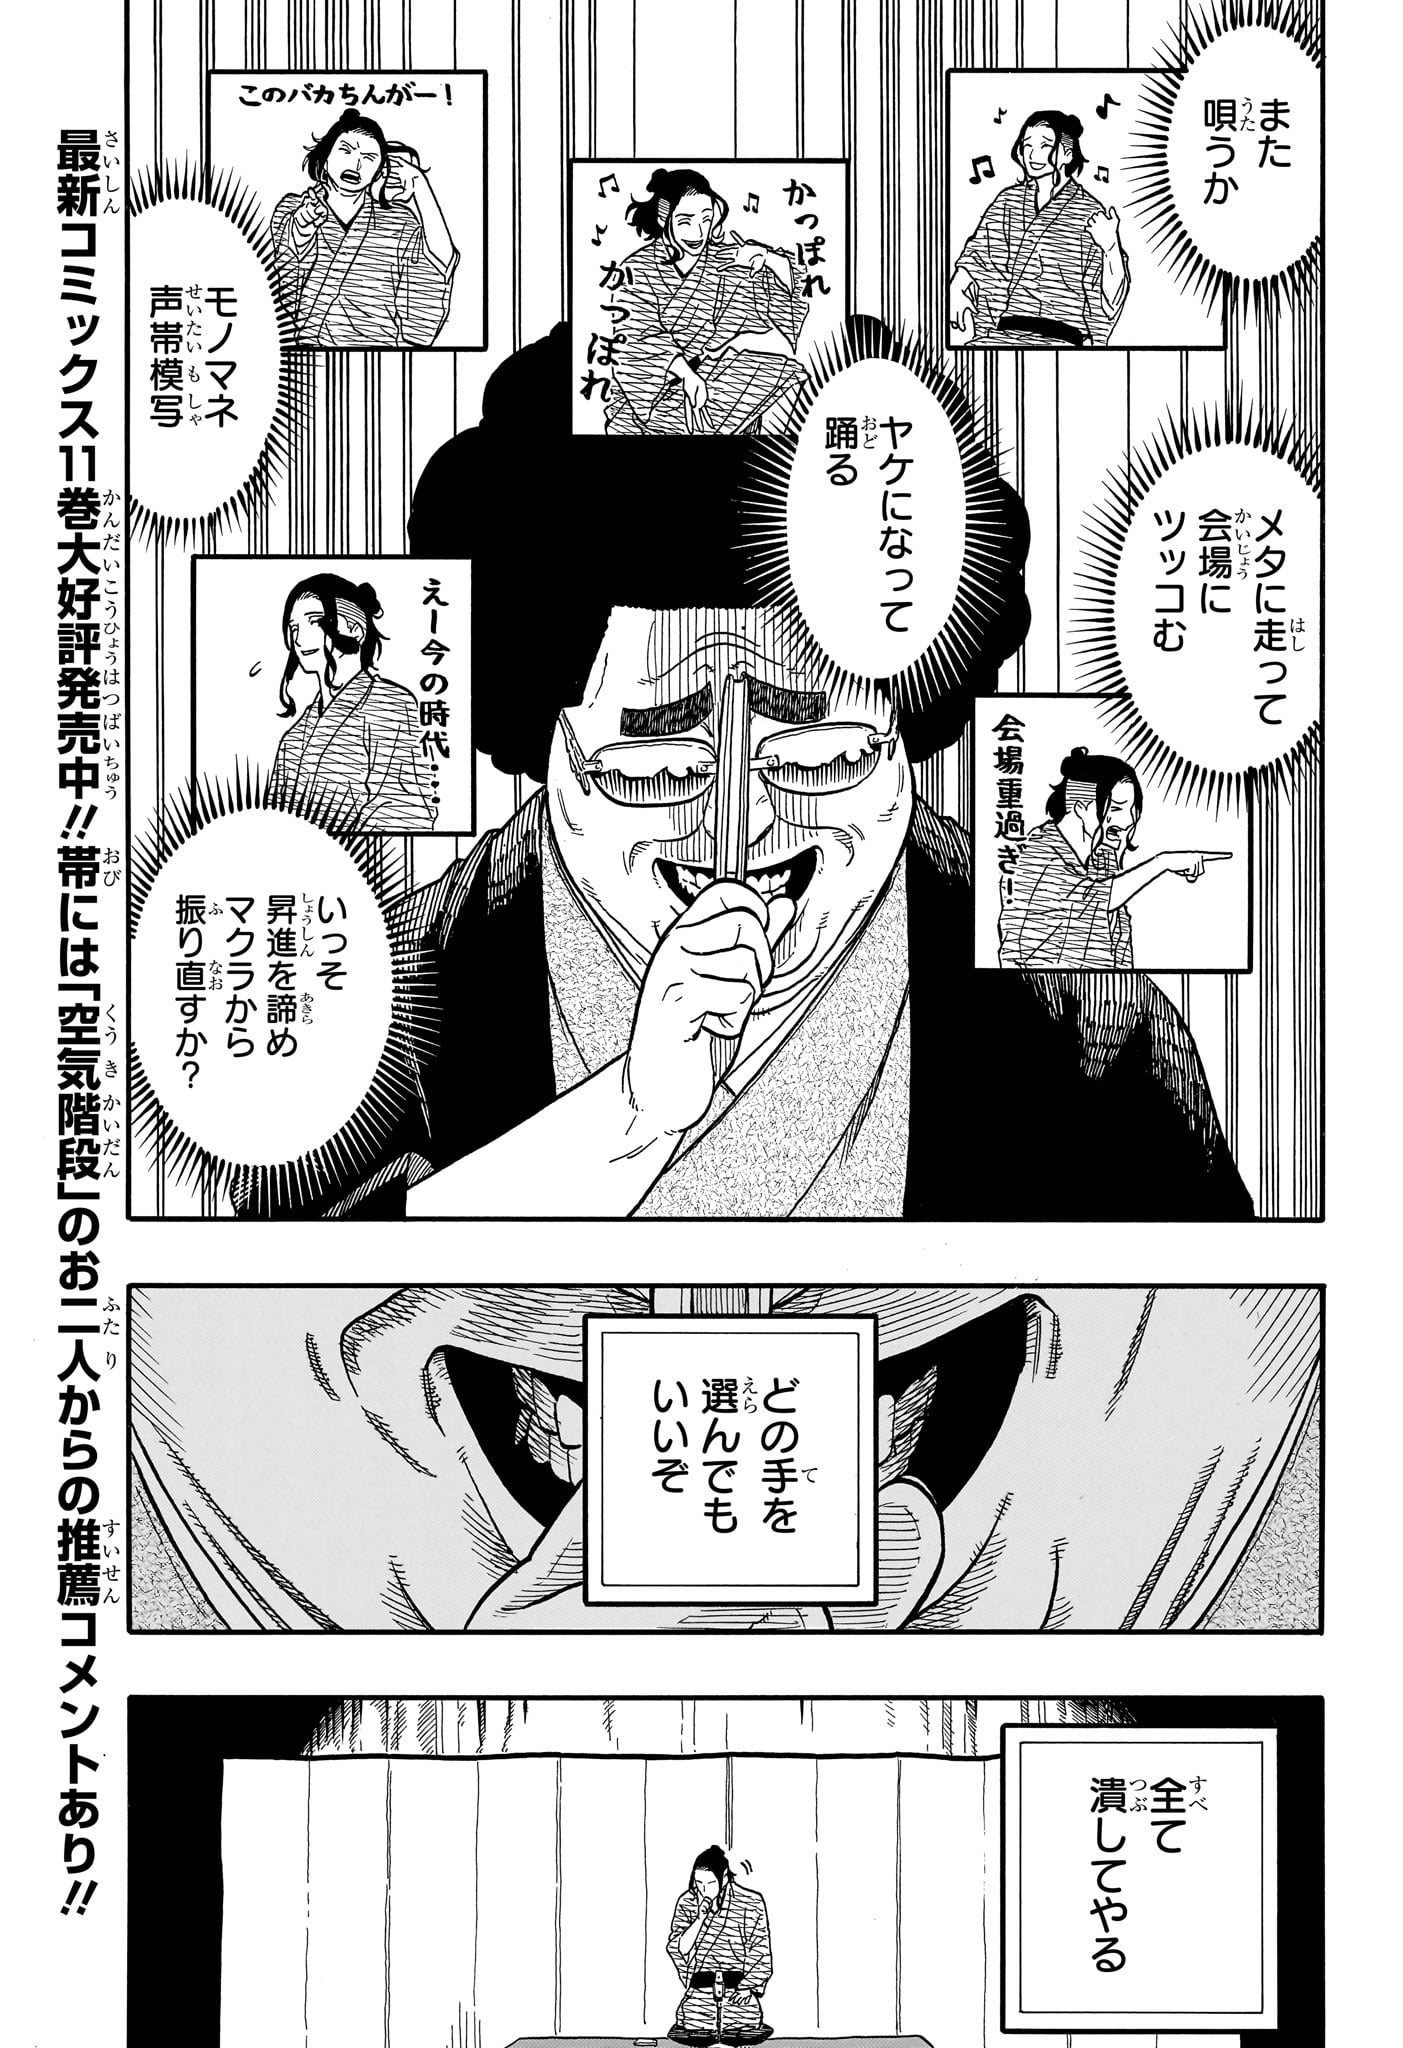 Akane-Banashi - Chapter 112 - Page 3